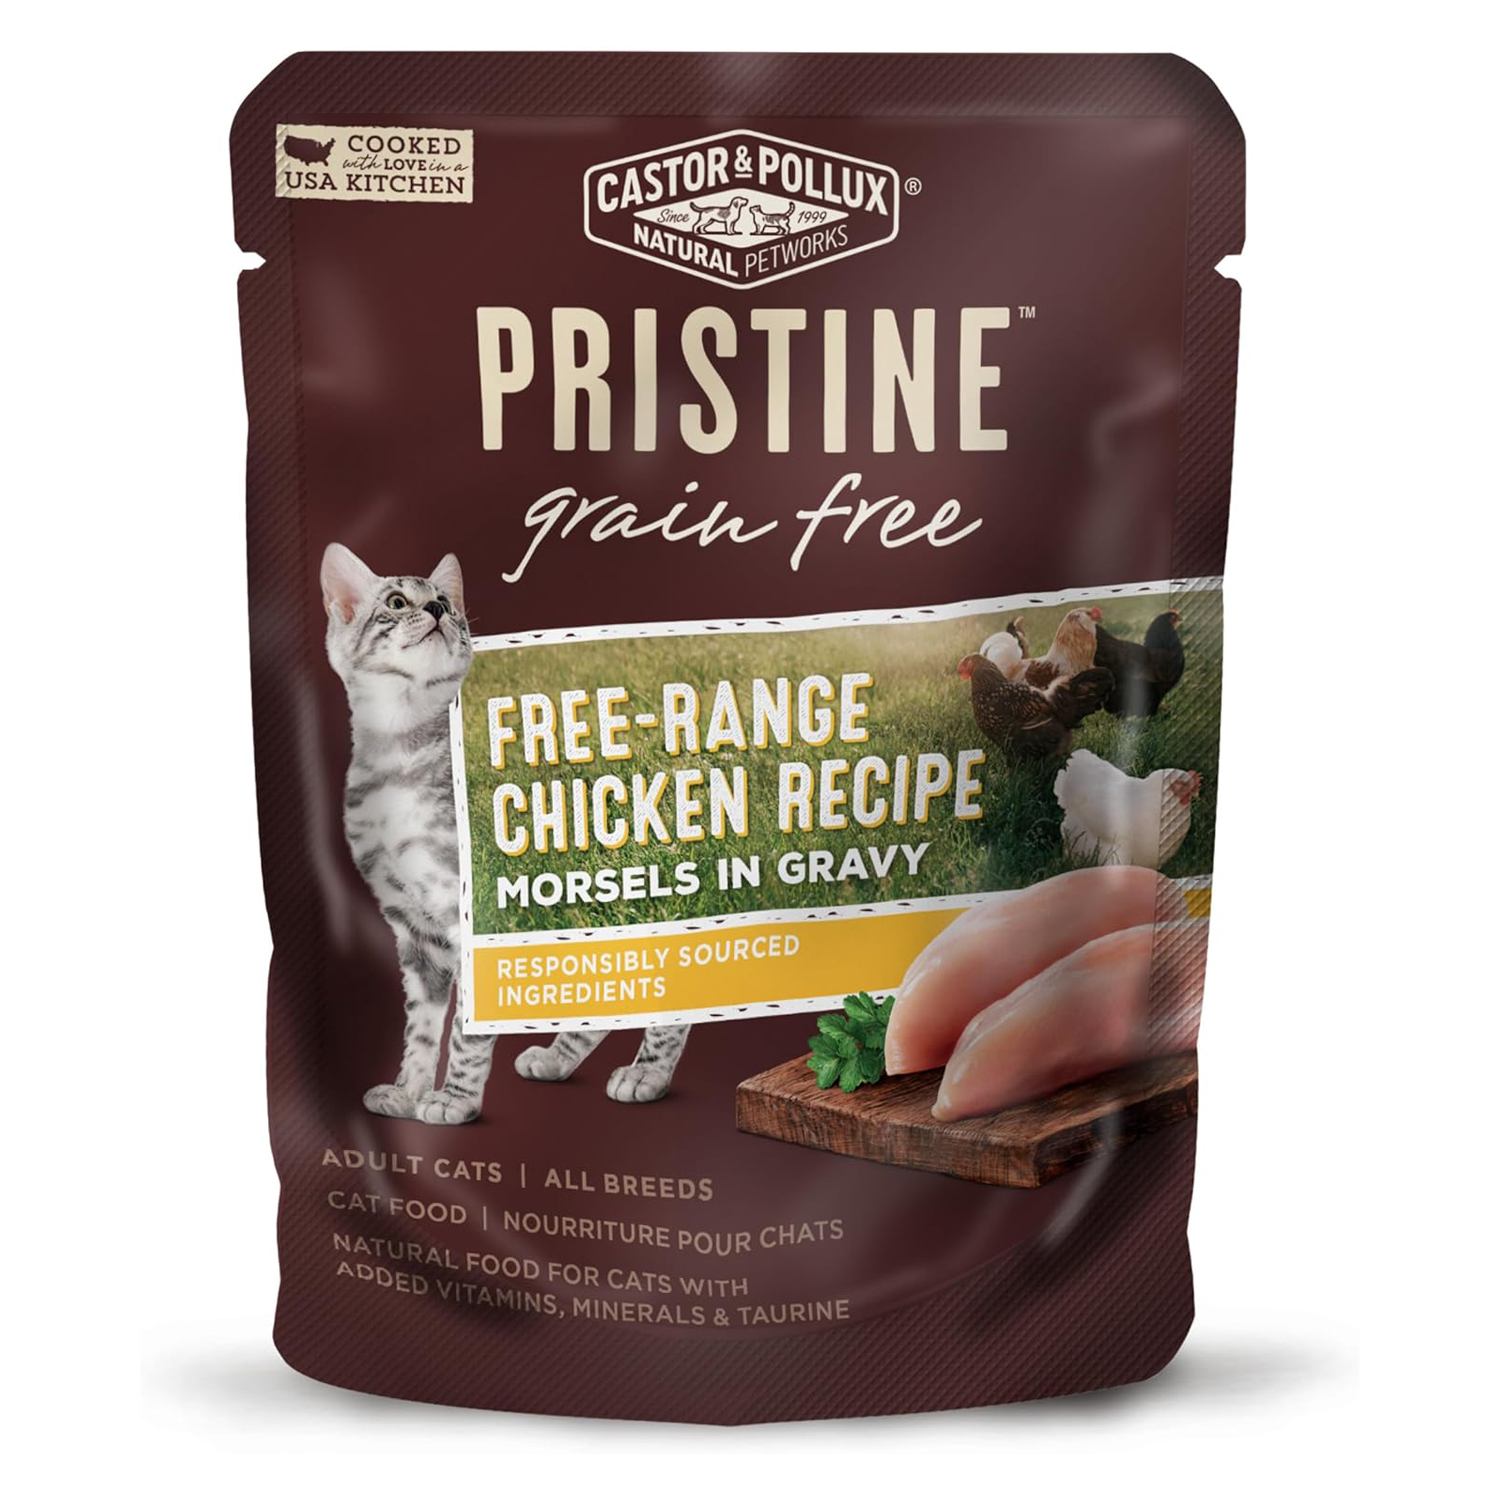 PRISTINE Grain Free Free-Range Chicken Recipe Morsels In Gravy Wet Cat Food